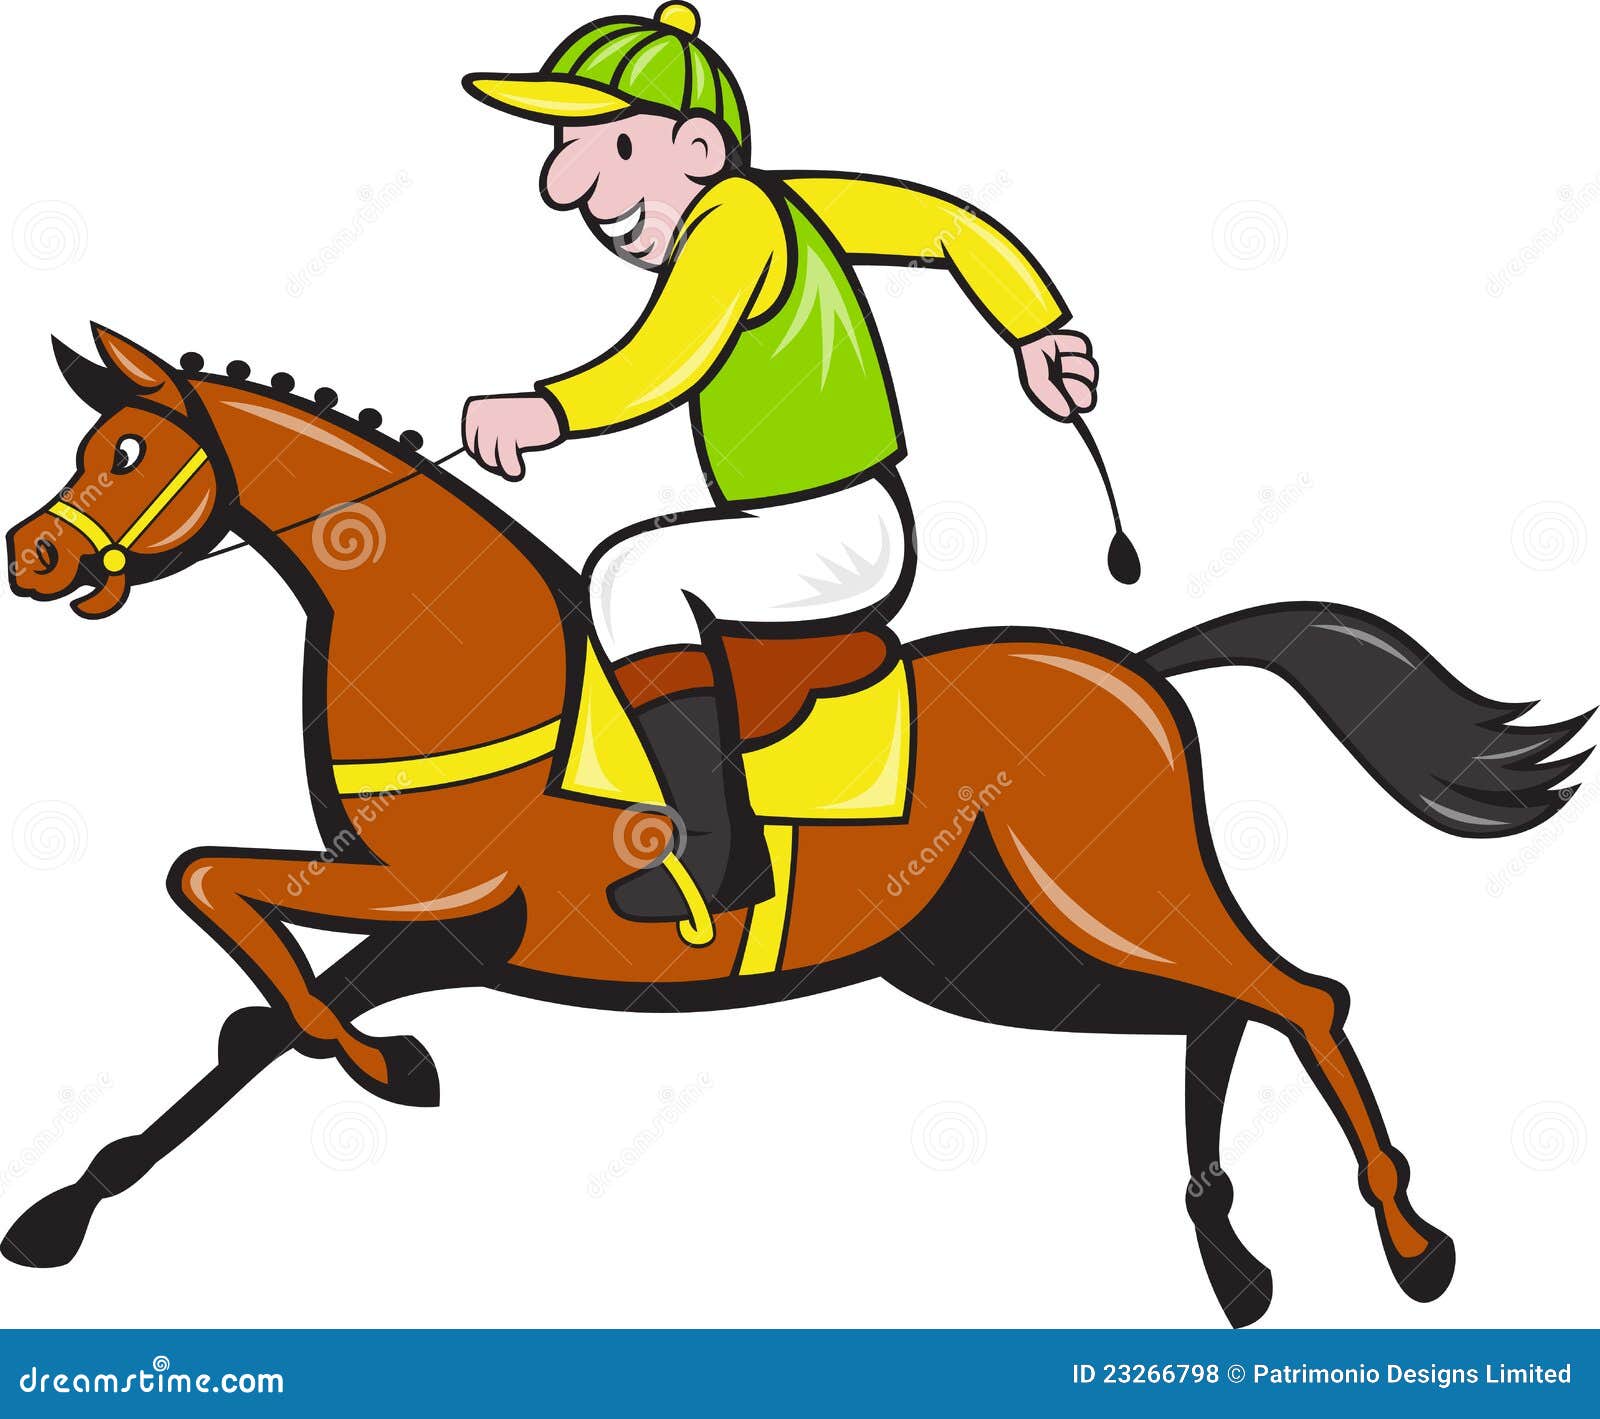 clipart horse and jockey - photo #38